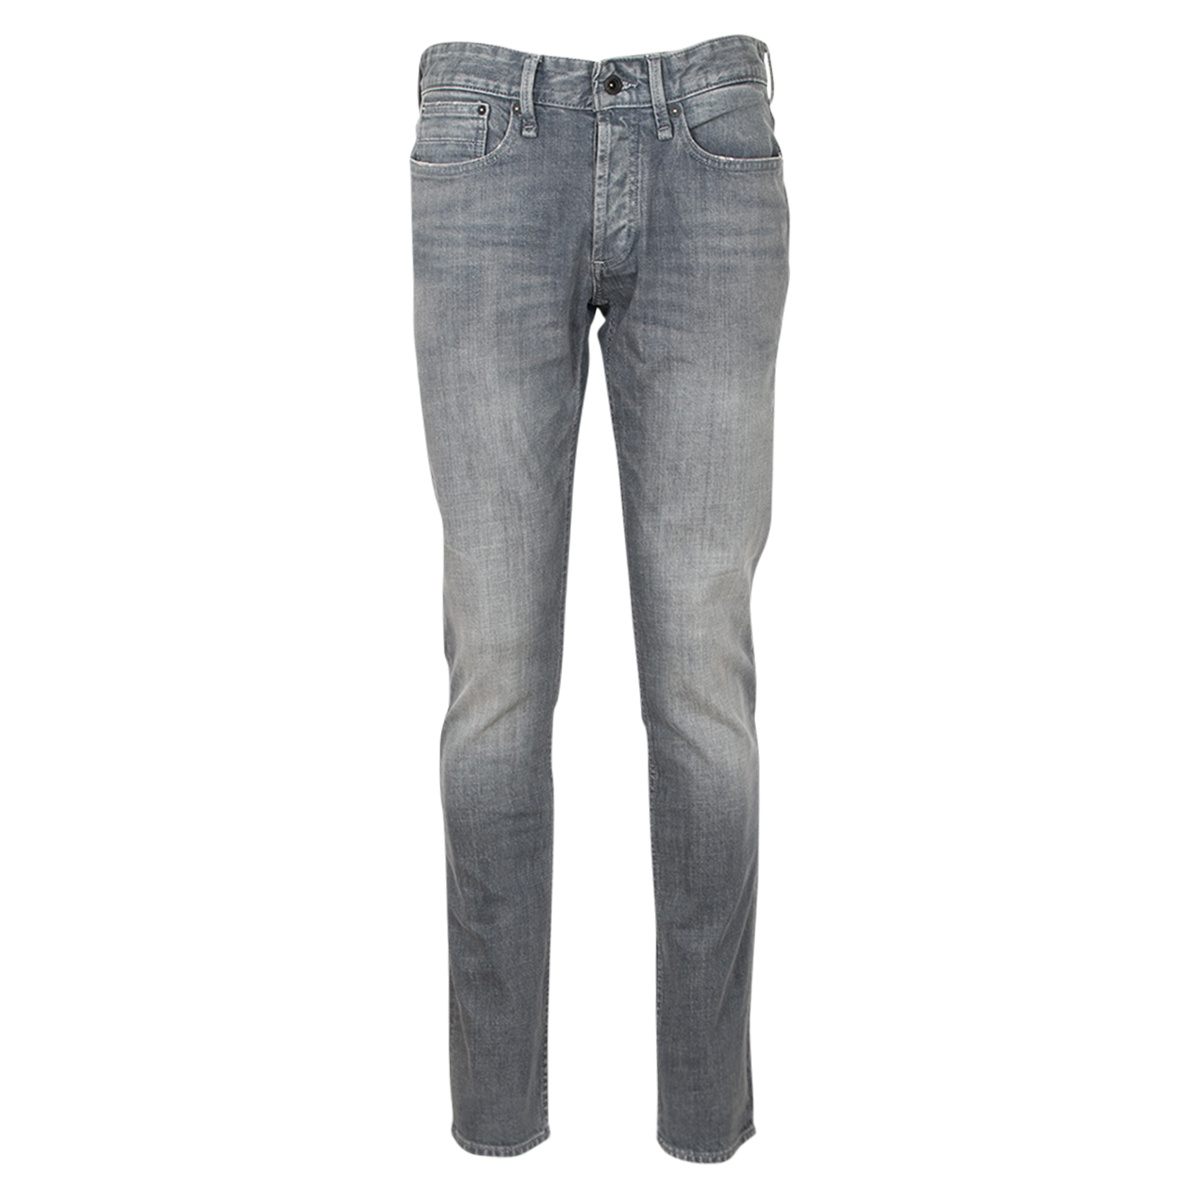 Denham Razor slim fit jeans grijs - Oud-Beijerland